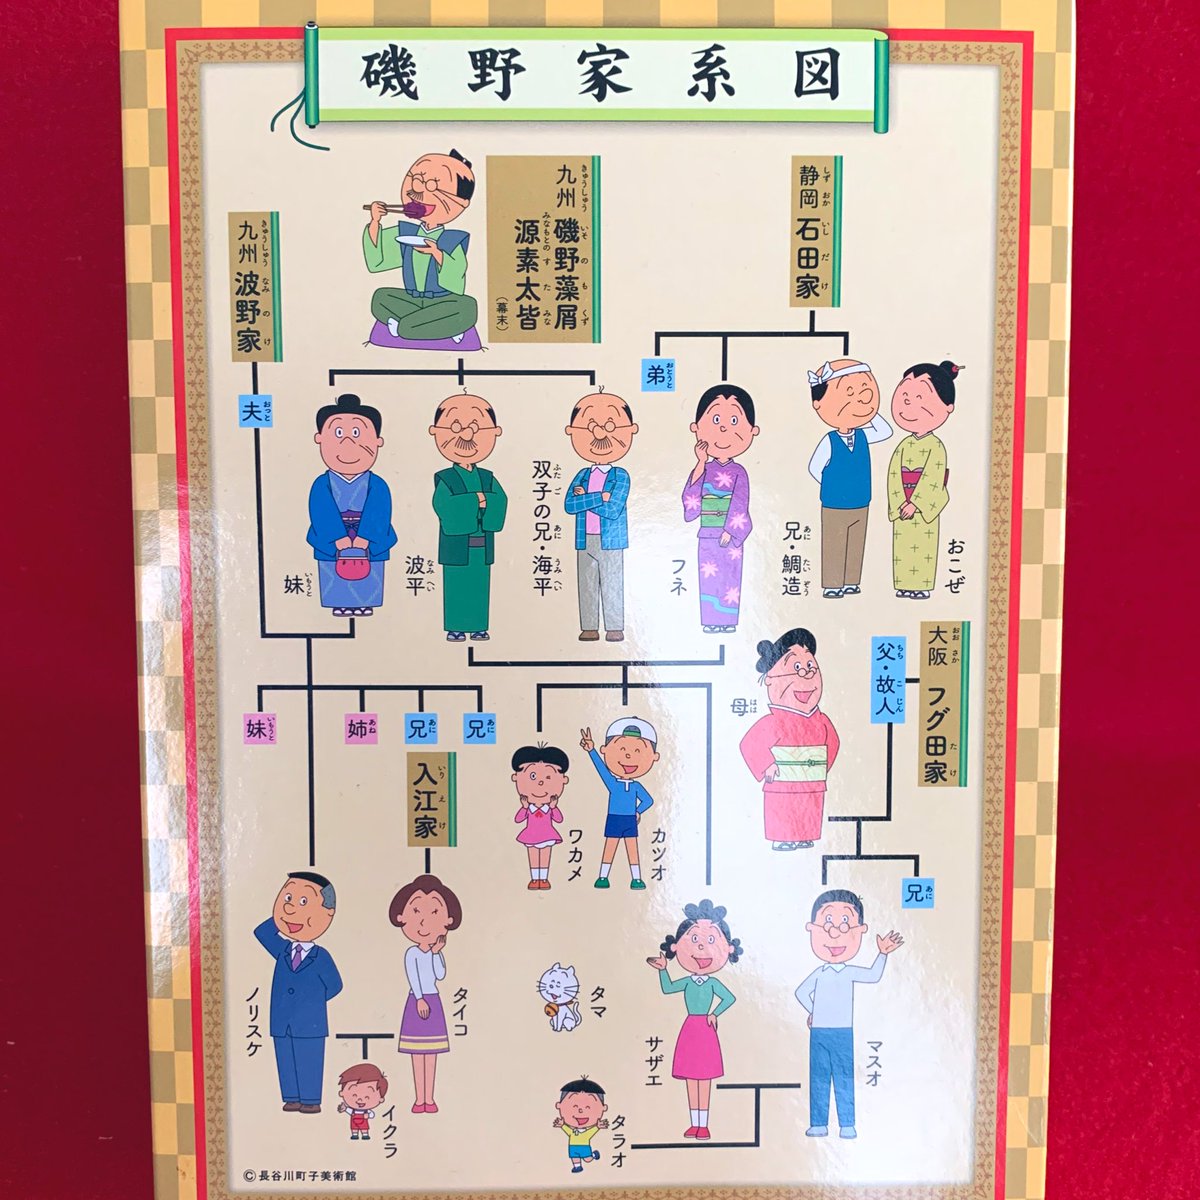 Twitter पर Hisa この家系図のポスター欲しいな きっと学校の教材にも使えそうw 実際 拡大家族とかの説明はサザエさんを例に教わったような気がする